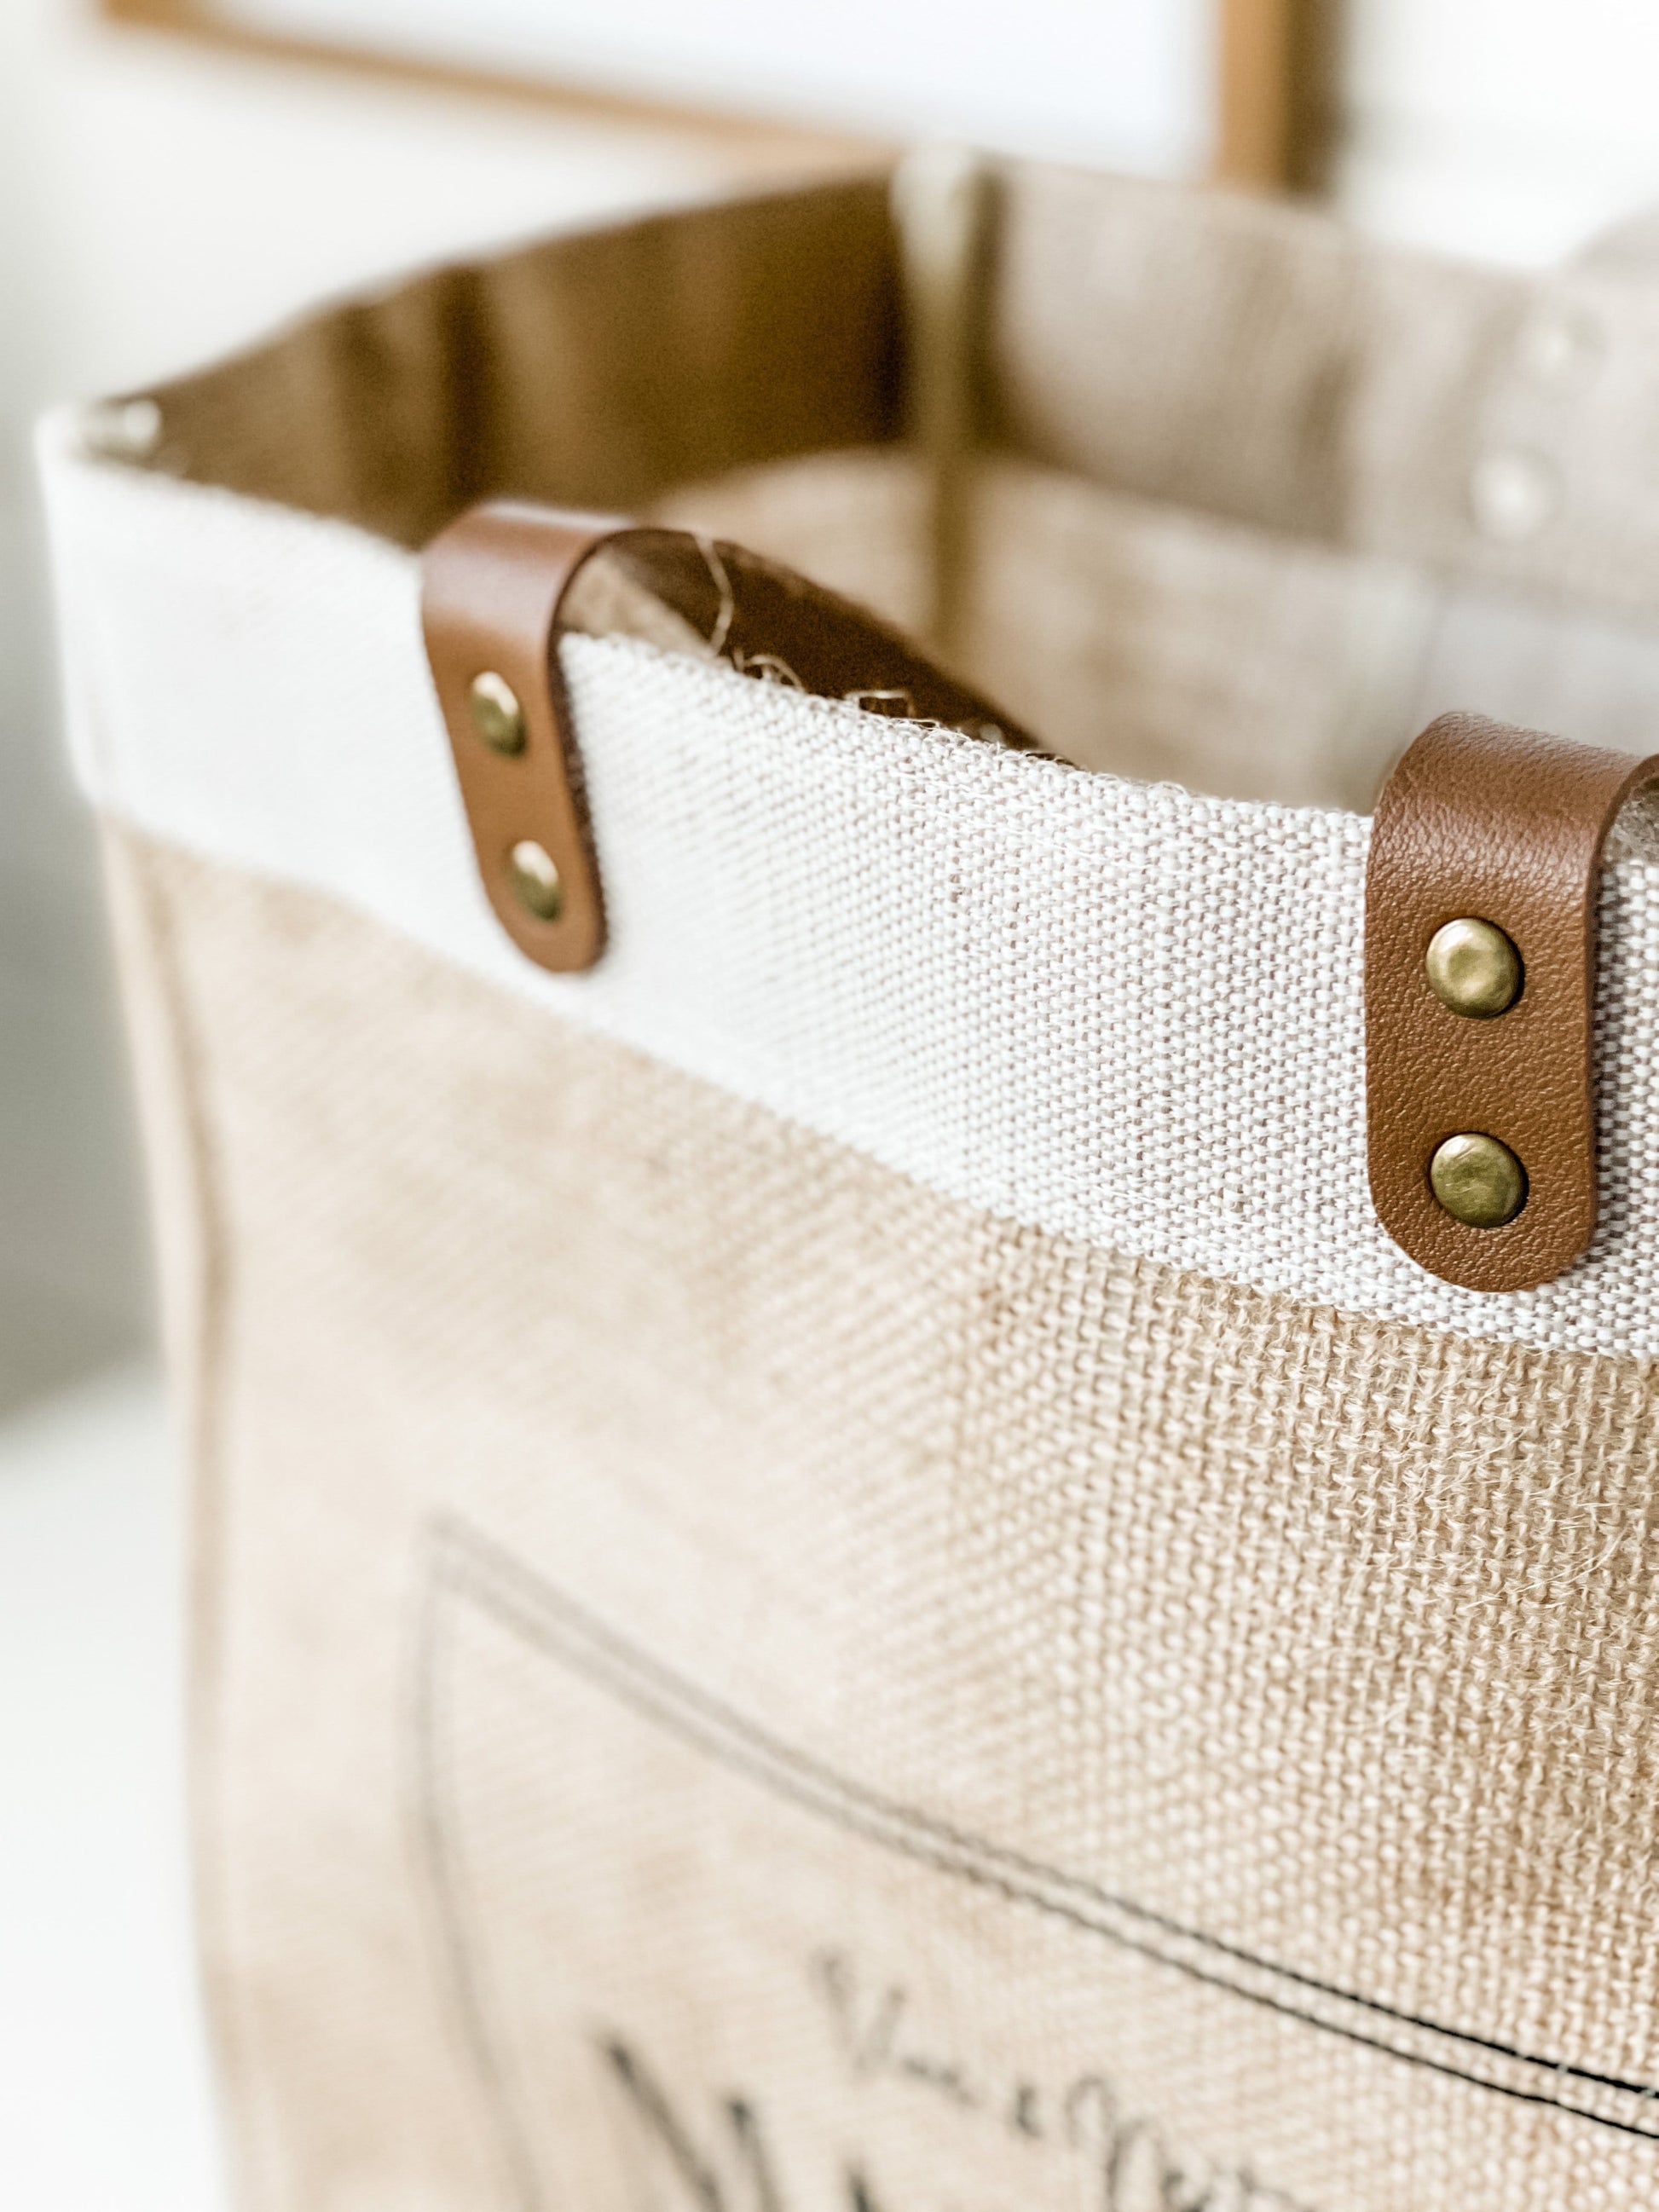 jute tote bag, grocery bag, reusable bag, quality tote bag, shopping bag, leather handles